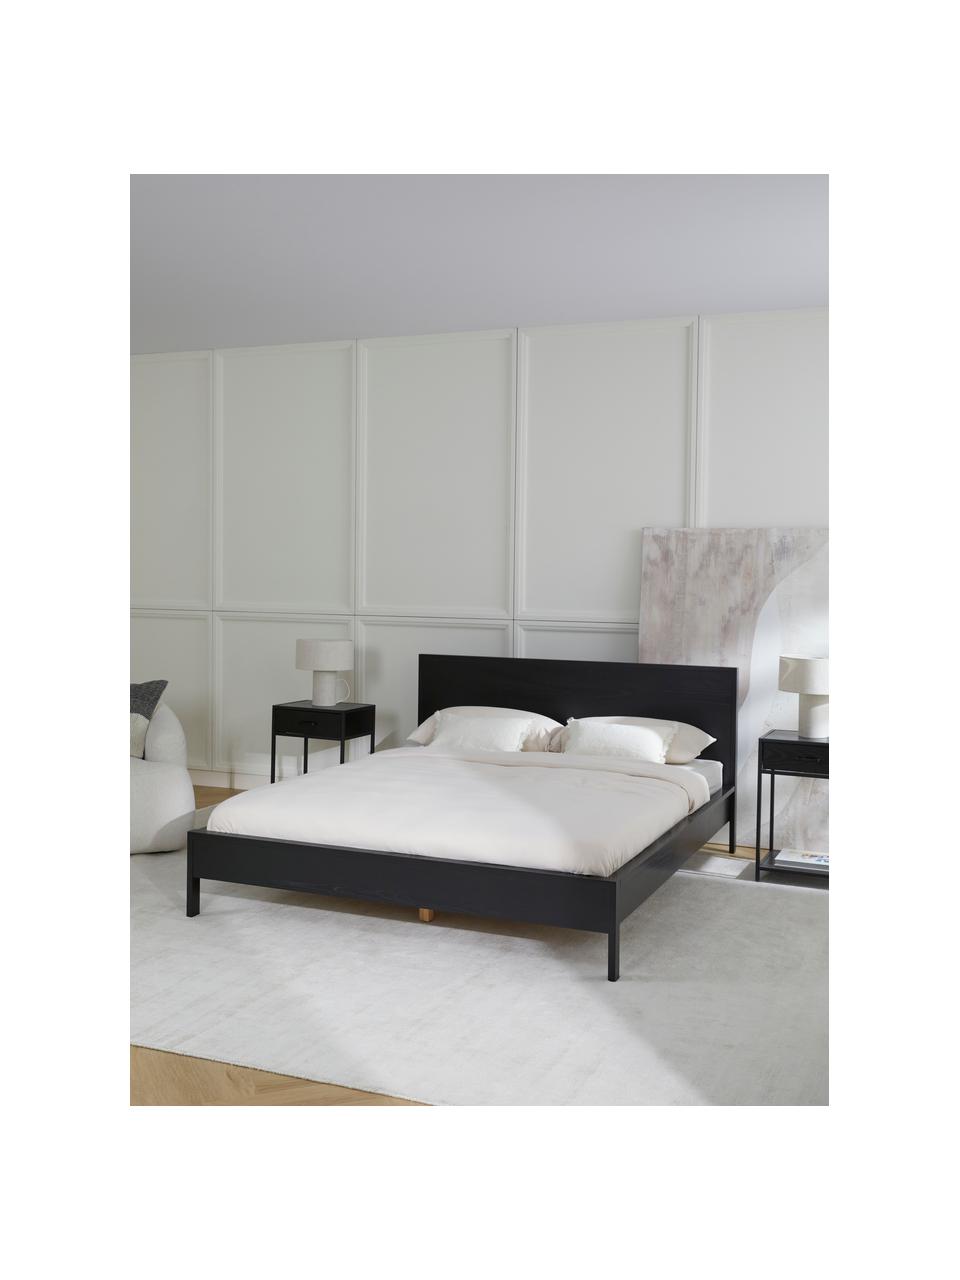 Dřevěná postel bez čela Tammy, Dřevo s jasanovou dýhou, Dřevo, lakováno černou barvou, 160 x 200 cm